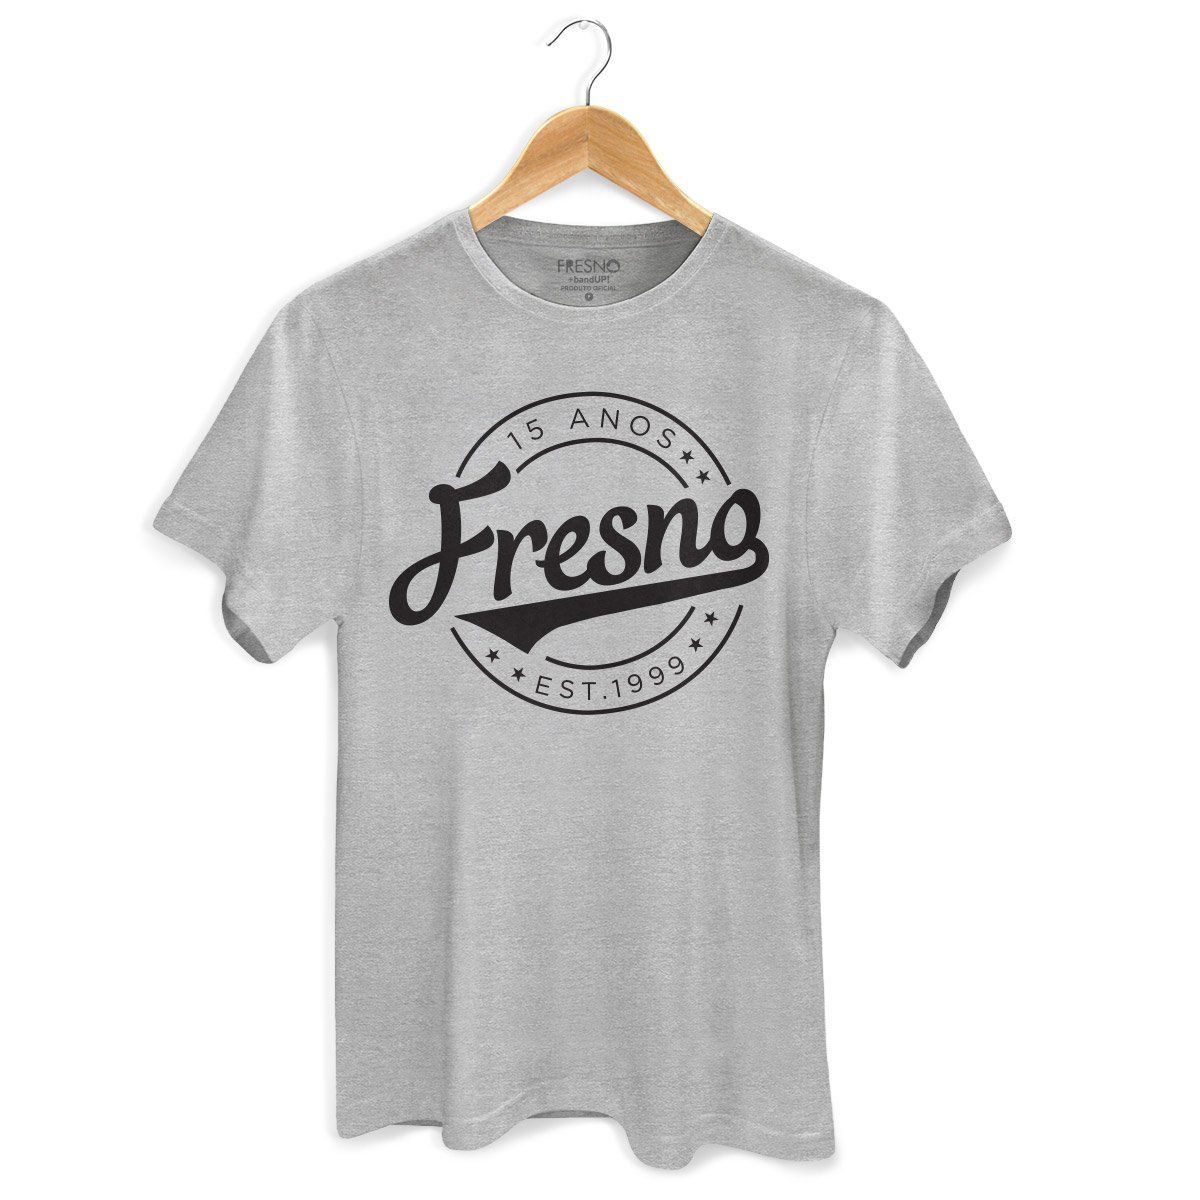 Camiseta Masculina Fresno 15 Anos Est 1999